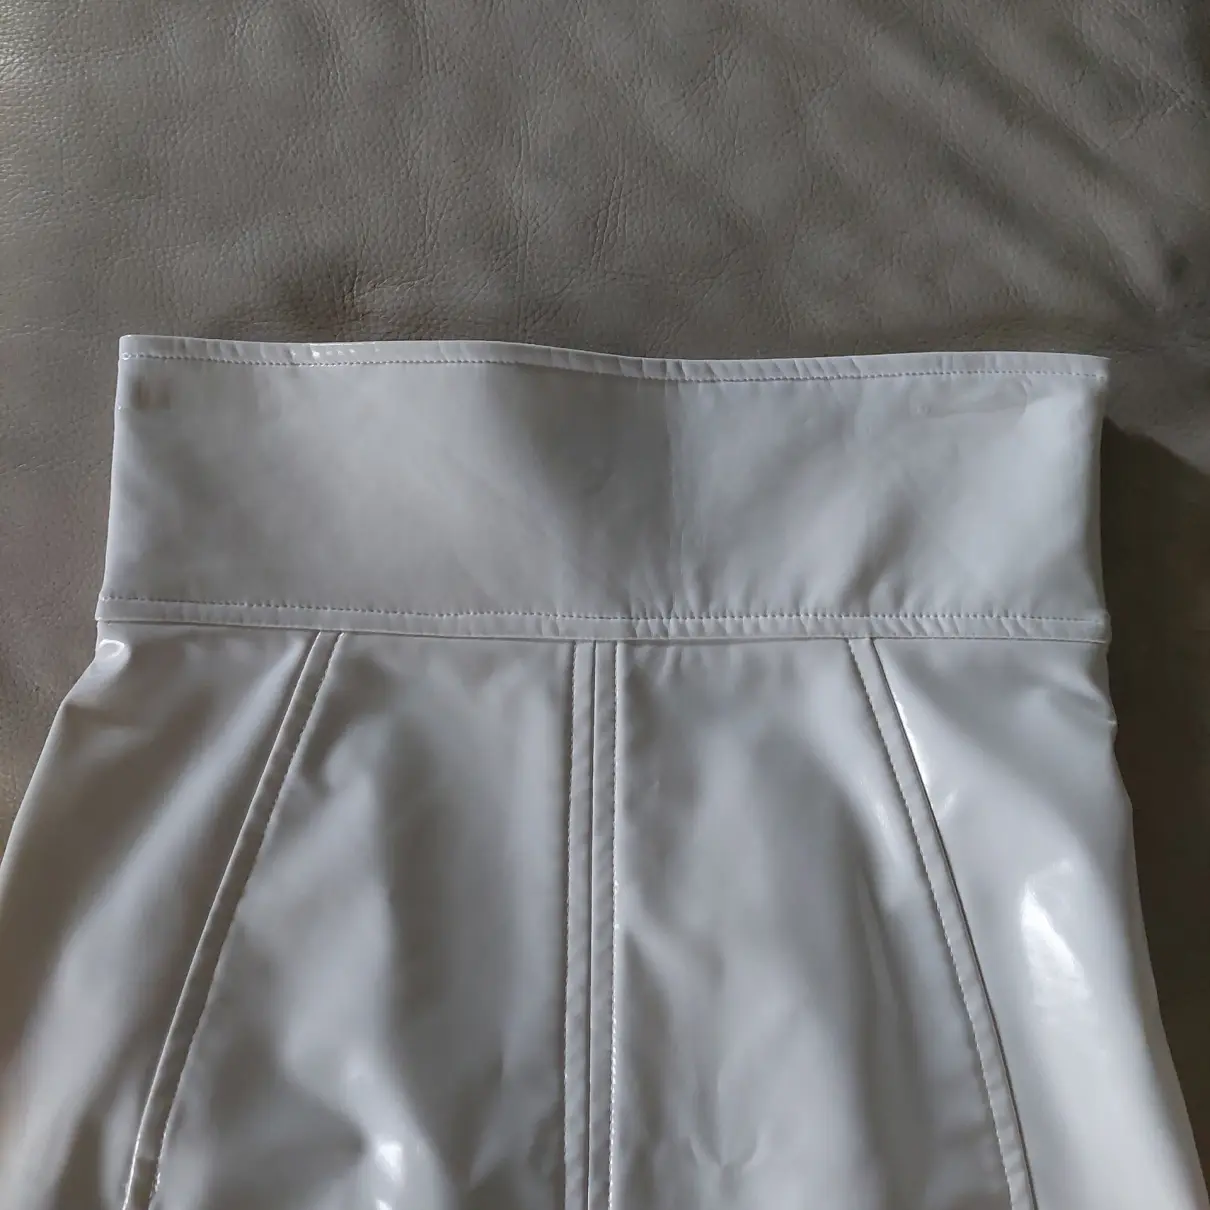 Buy Elisabetta Franchi Mini skirt online